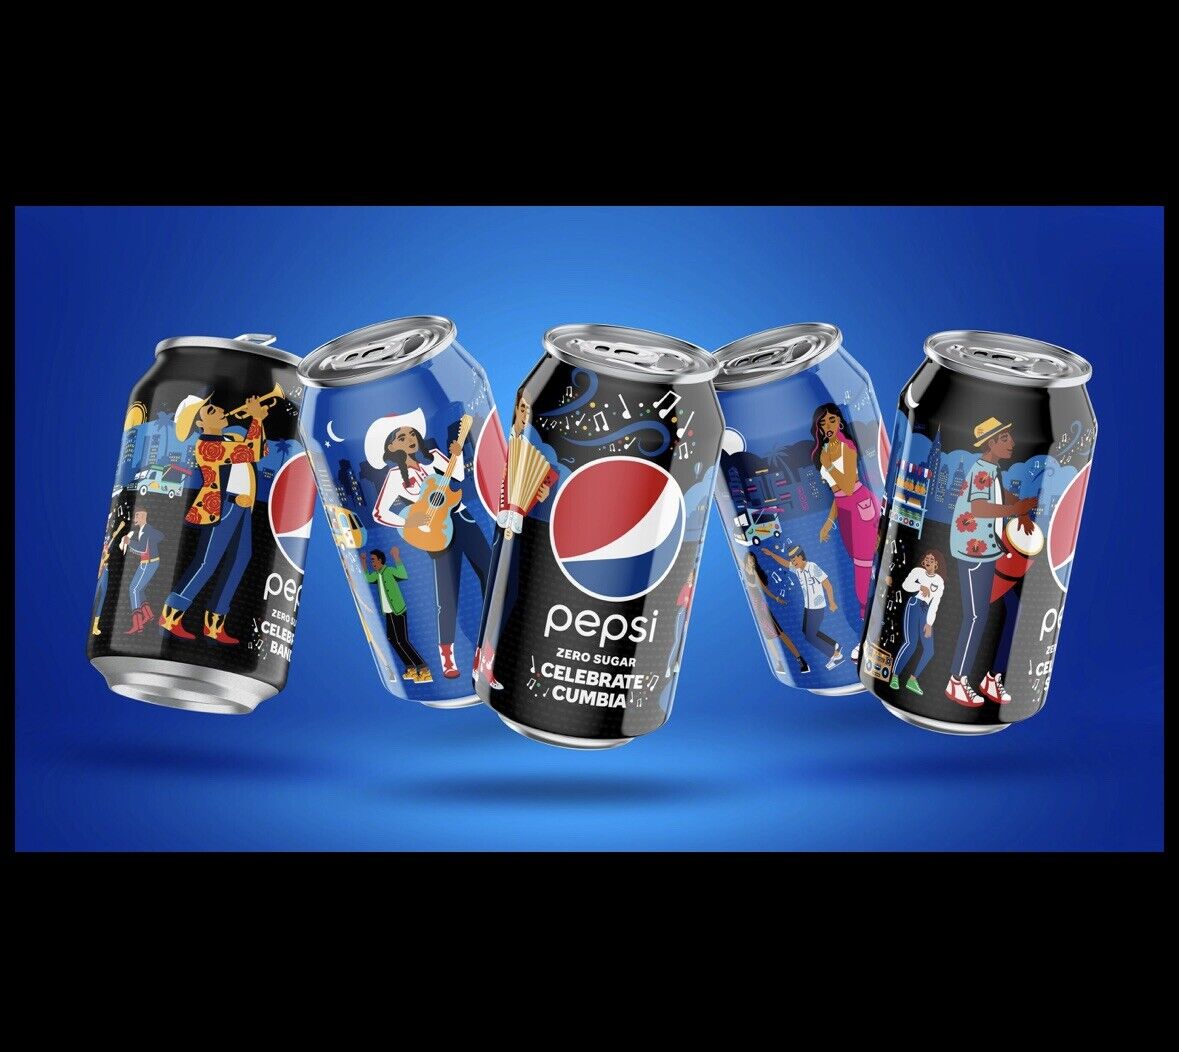 Pepsi Muevelo Con Pepsi Cans Zero Sugar LE 400 Brand New